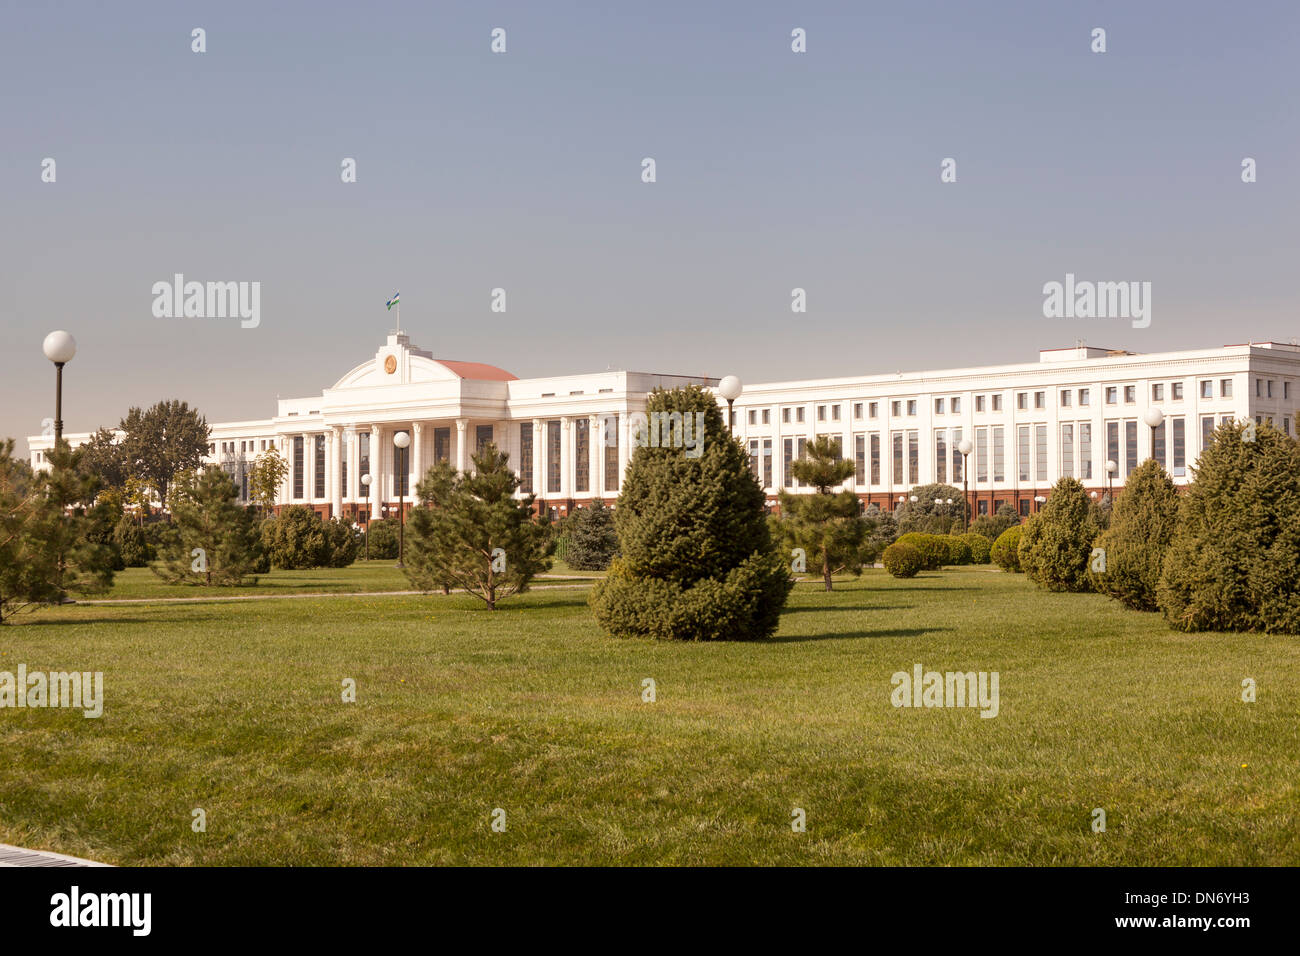 The Senate of the Republic of Uzbekistan, Independence Square, Mustakillik Maydoni, Tashkent, Uzbekistan Stock Photo